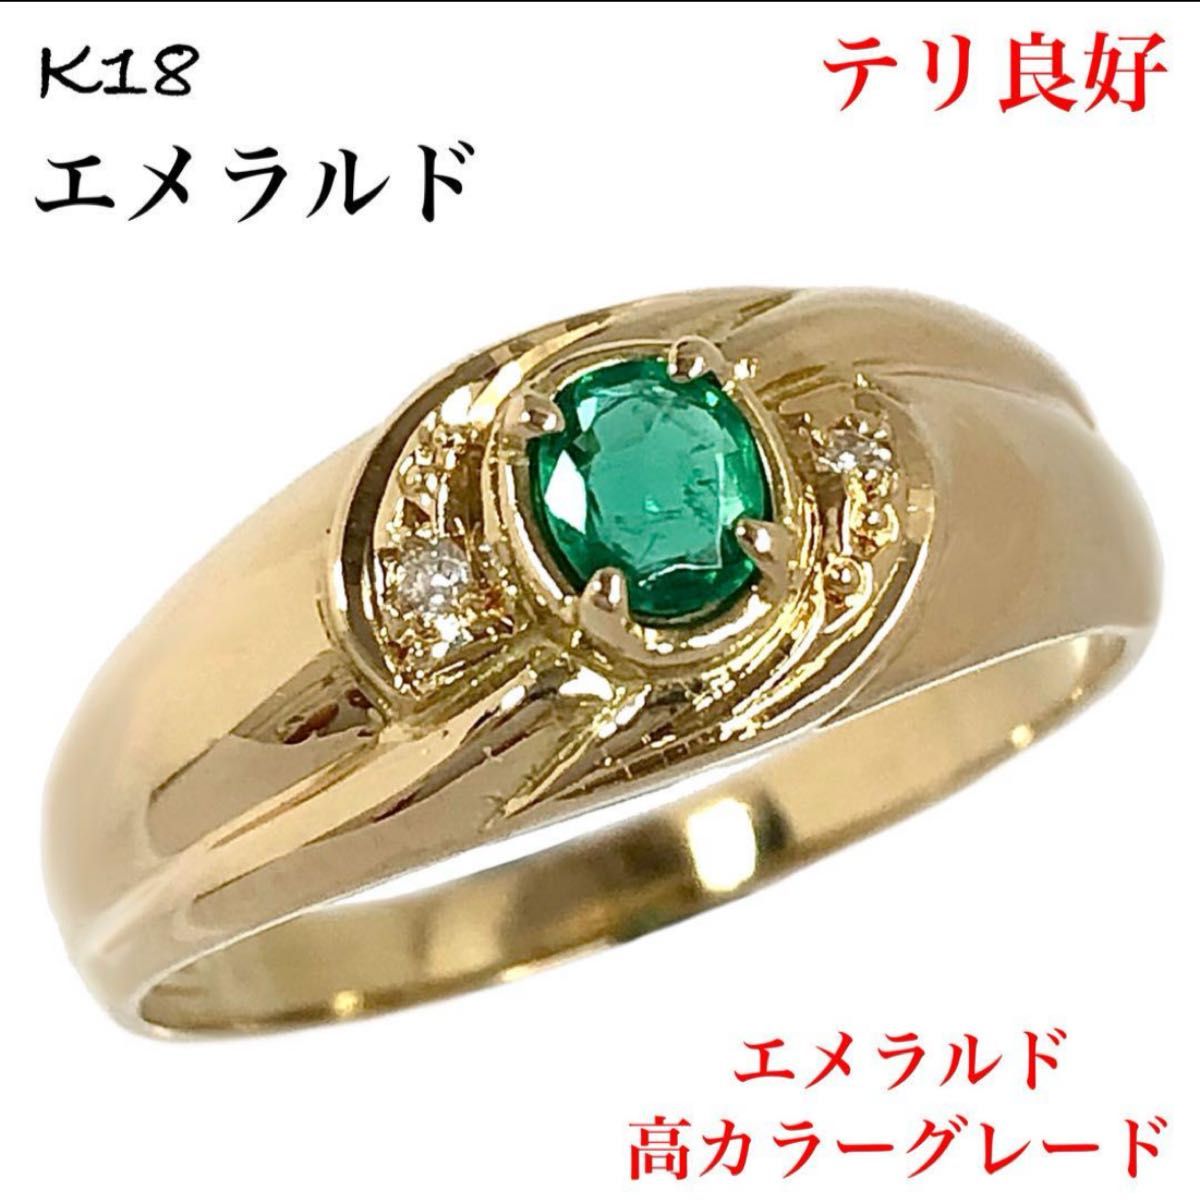 天然 エメラルド ダイヤモンド K18 ダイヤ 一粒 リング 指輪 18金 高級